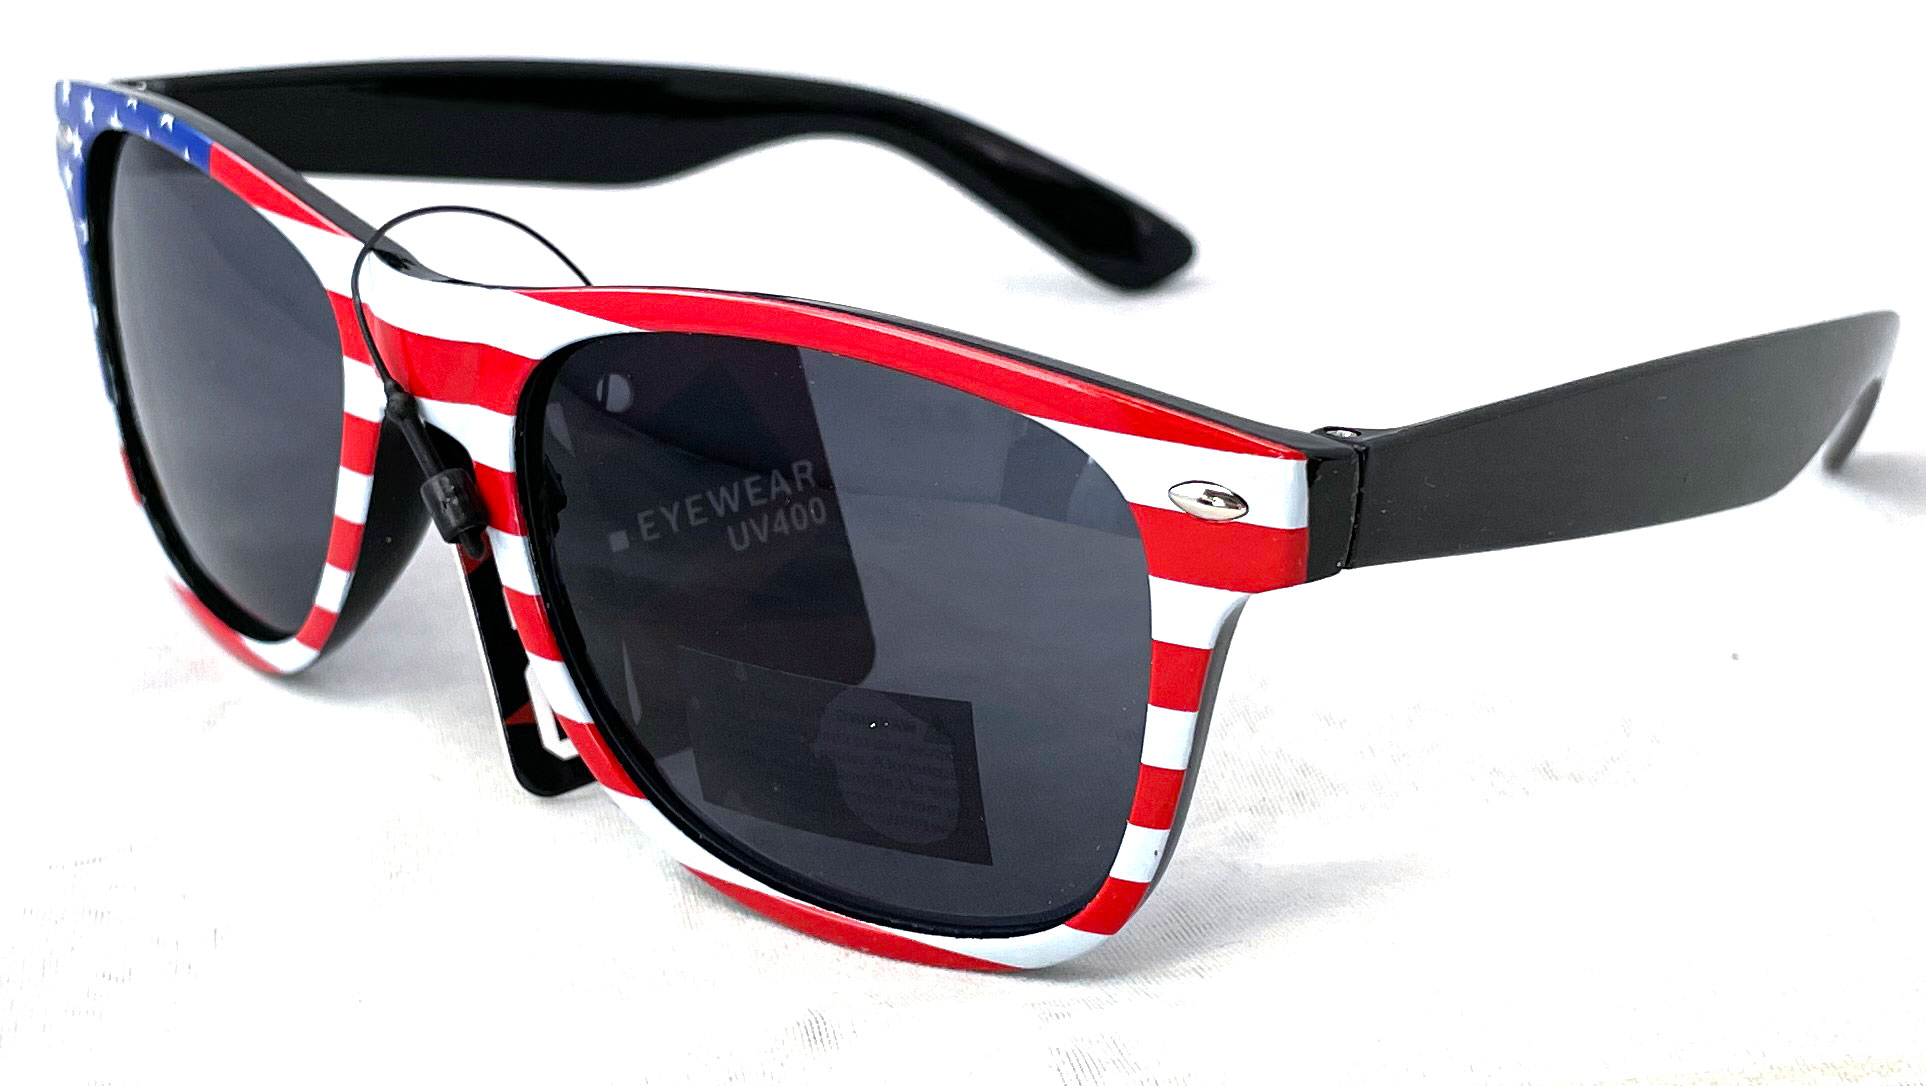 USA American FLAG Printed Sunglasses